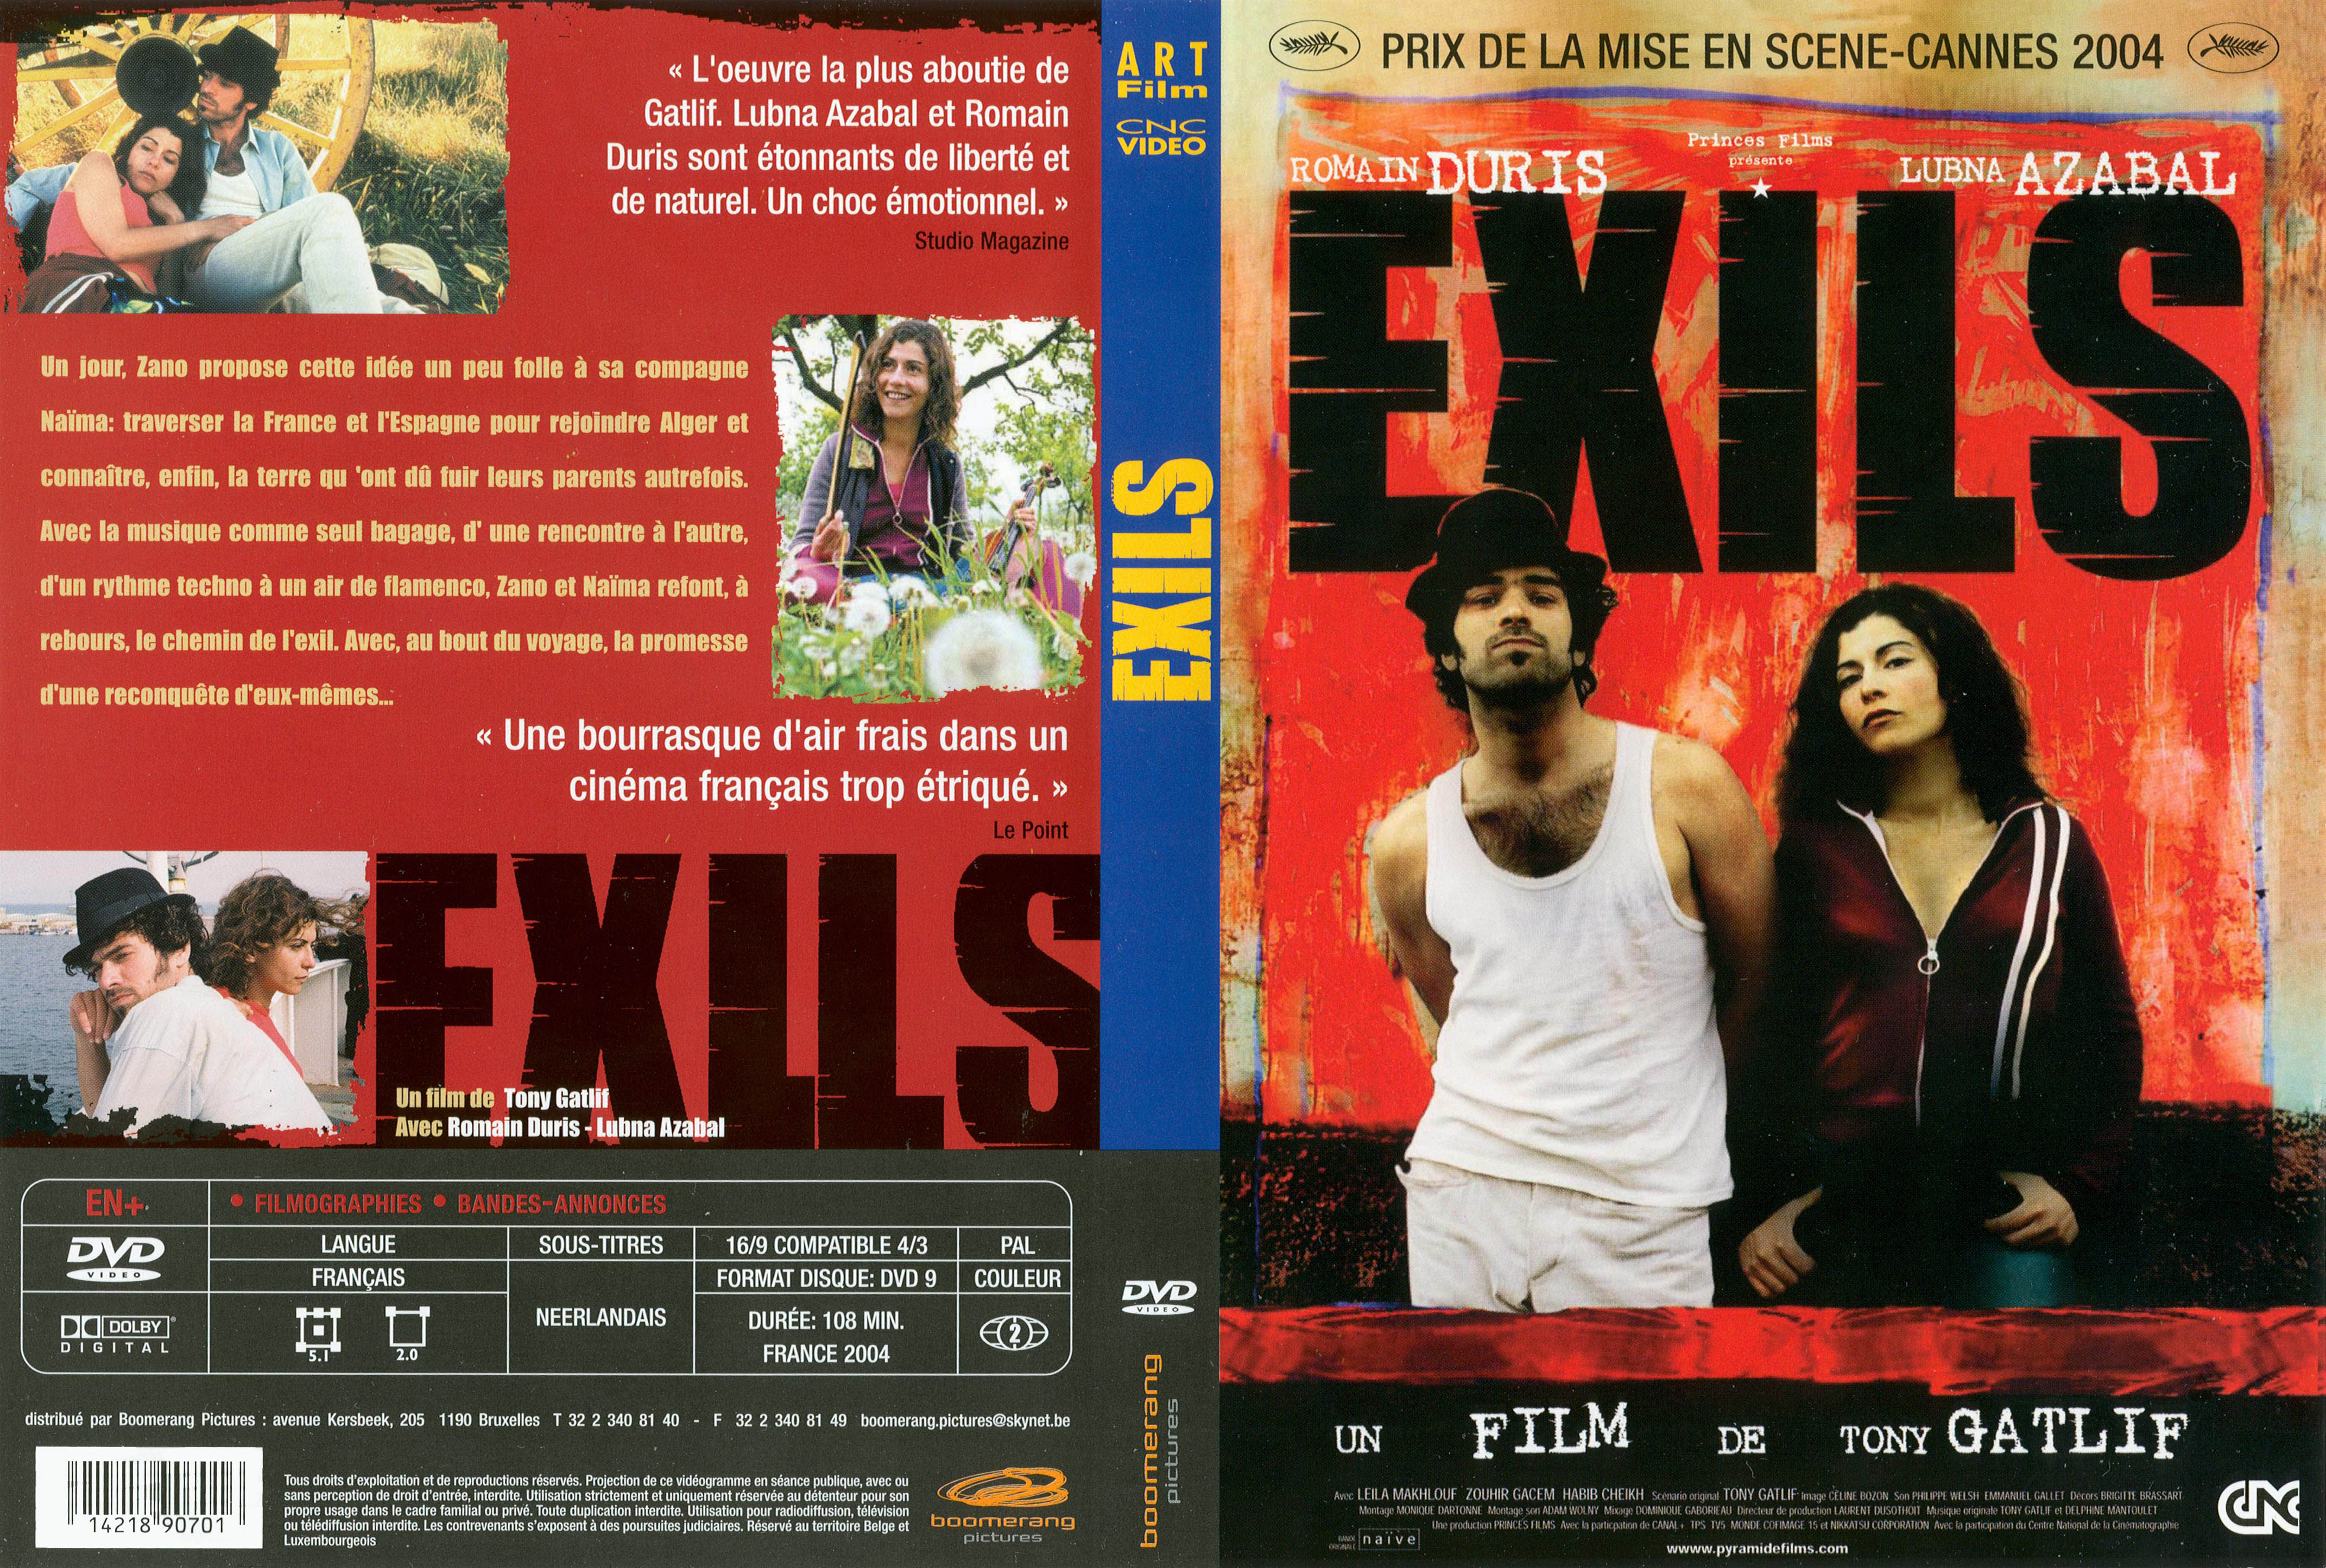 Jaquette DVD Exils